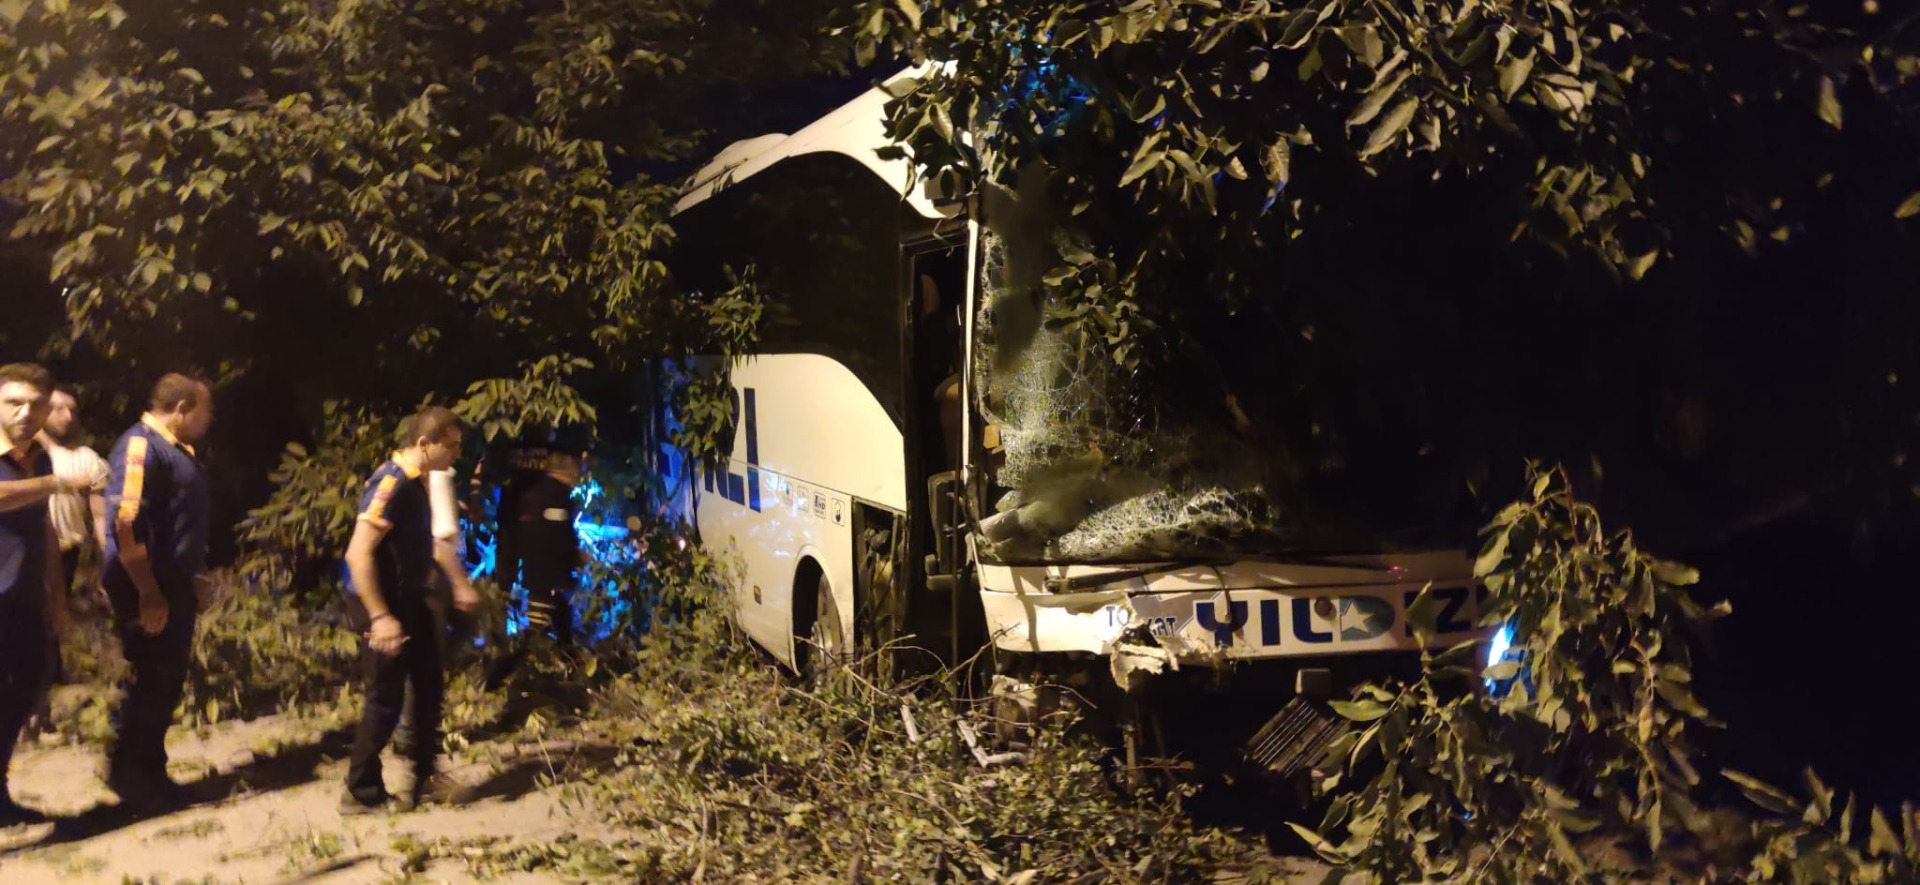 Şehirlerarası yolcu otobüsü ile kamyonet çarpıştı: 2 ölü, 8 yaralı